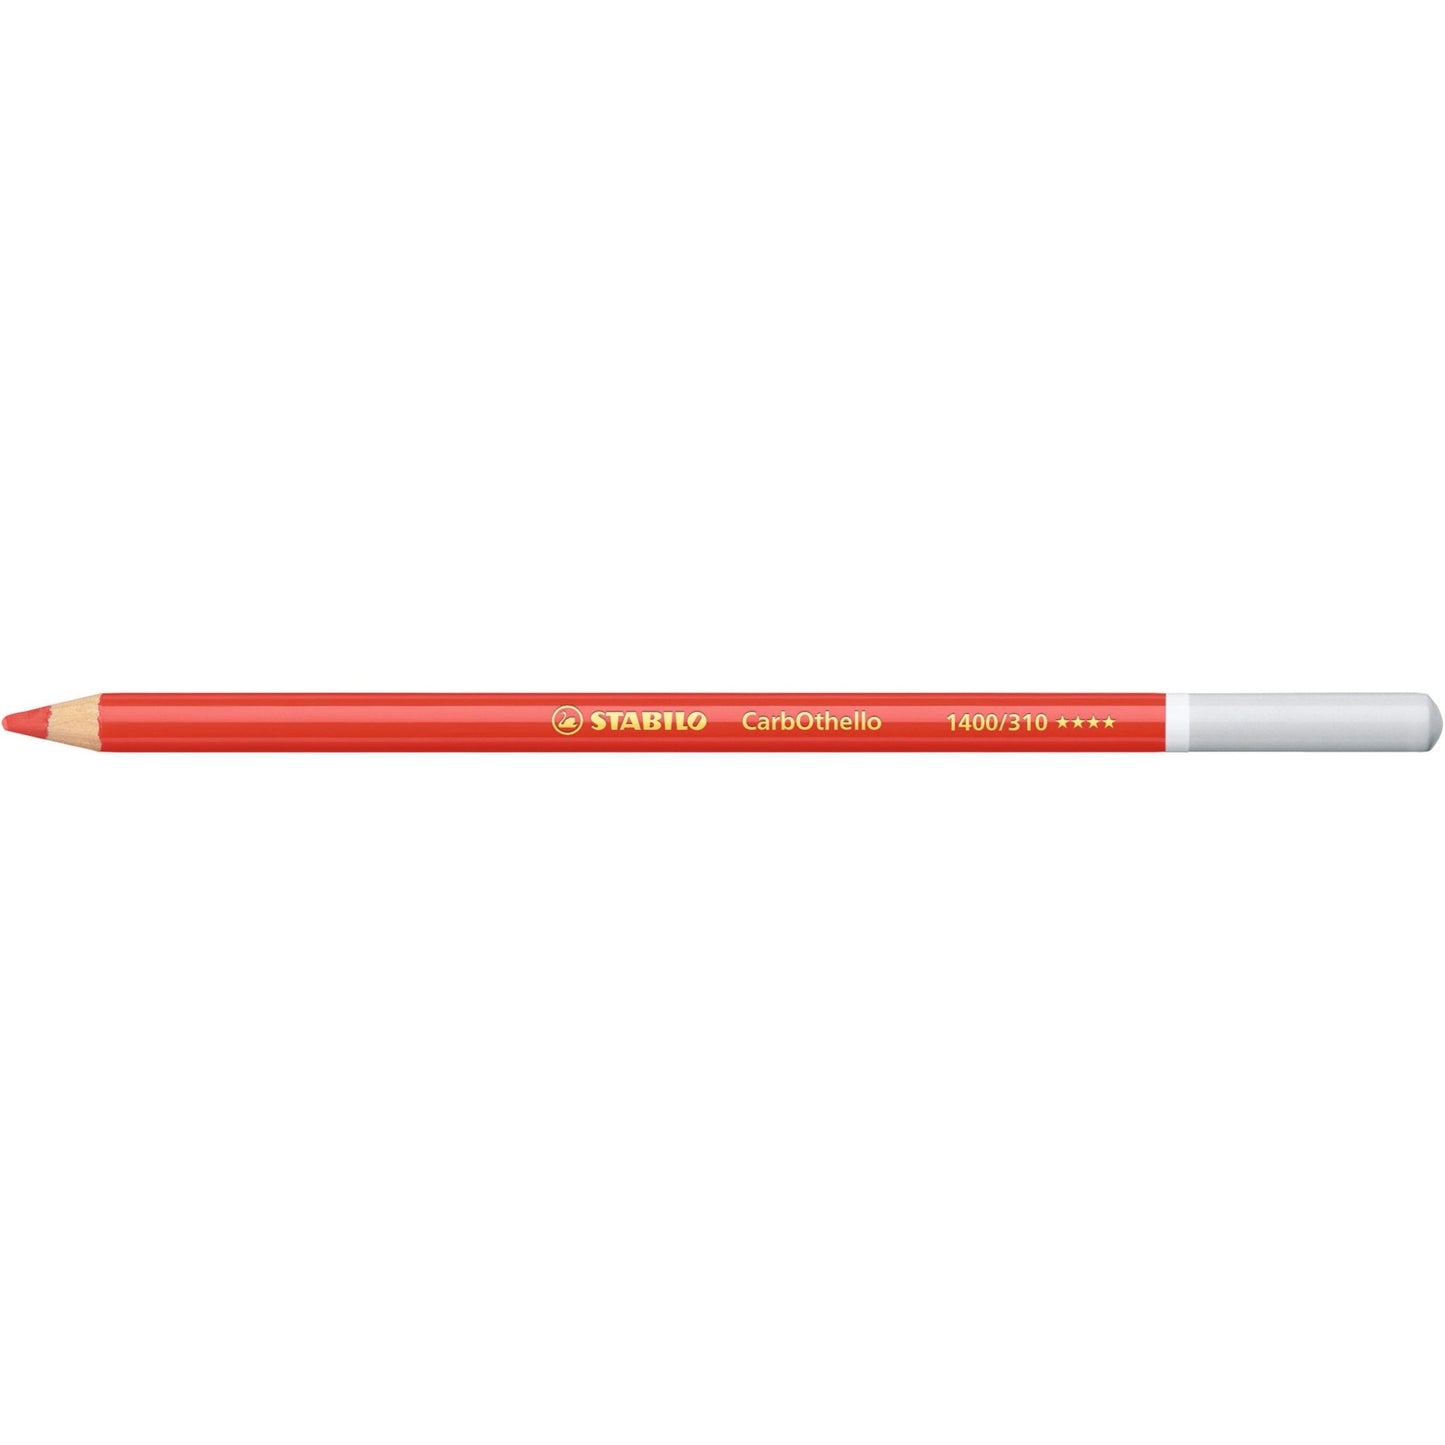 Stabilo CarbOthello Coloured Pastel Pencil 310 Carmine Red - theartshop.com.au